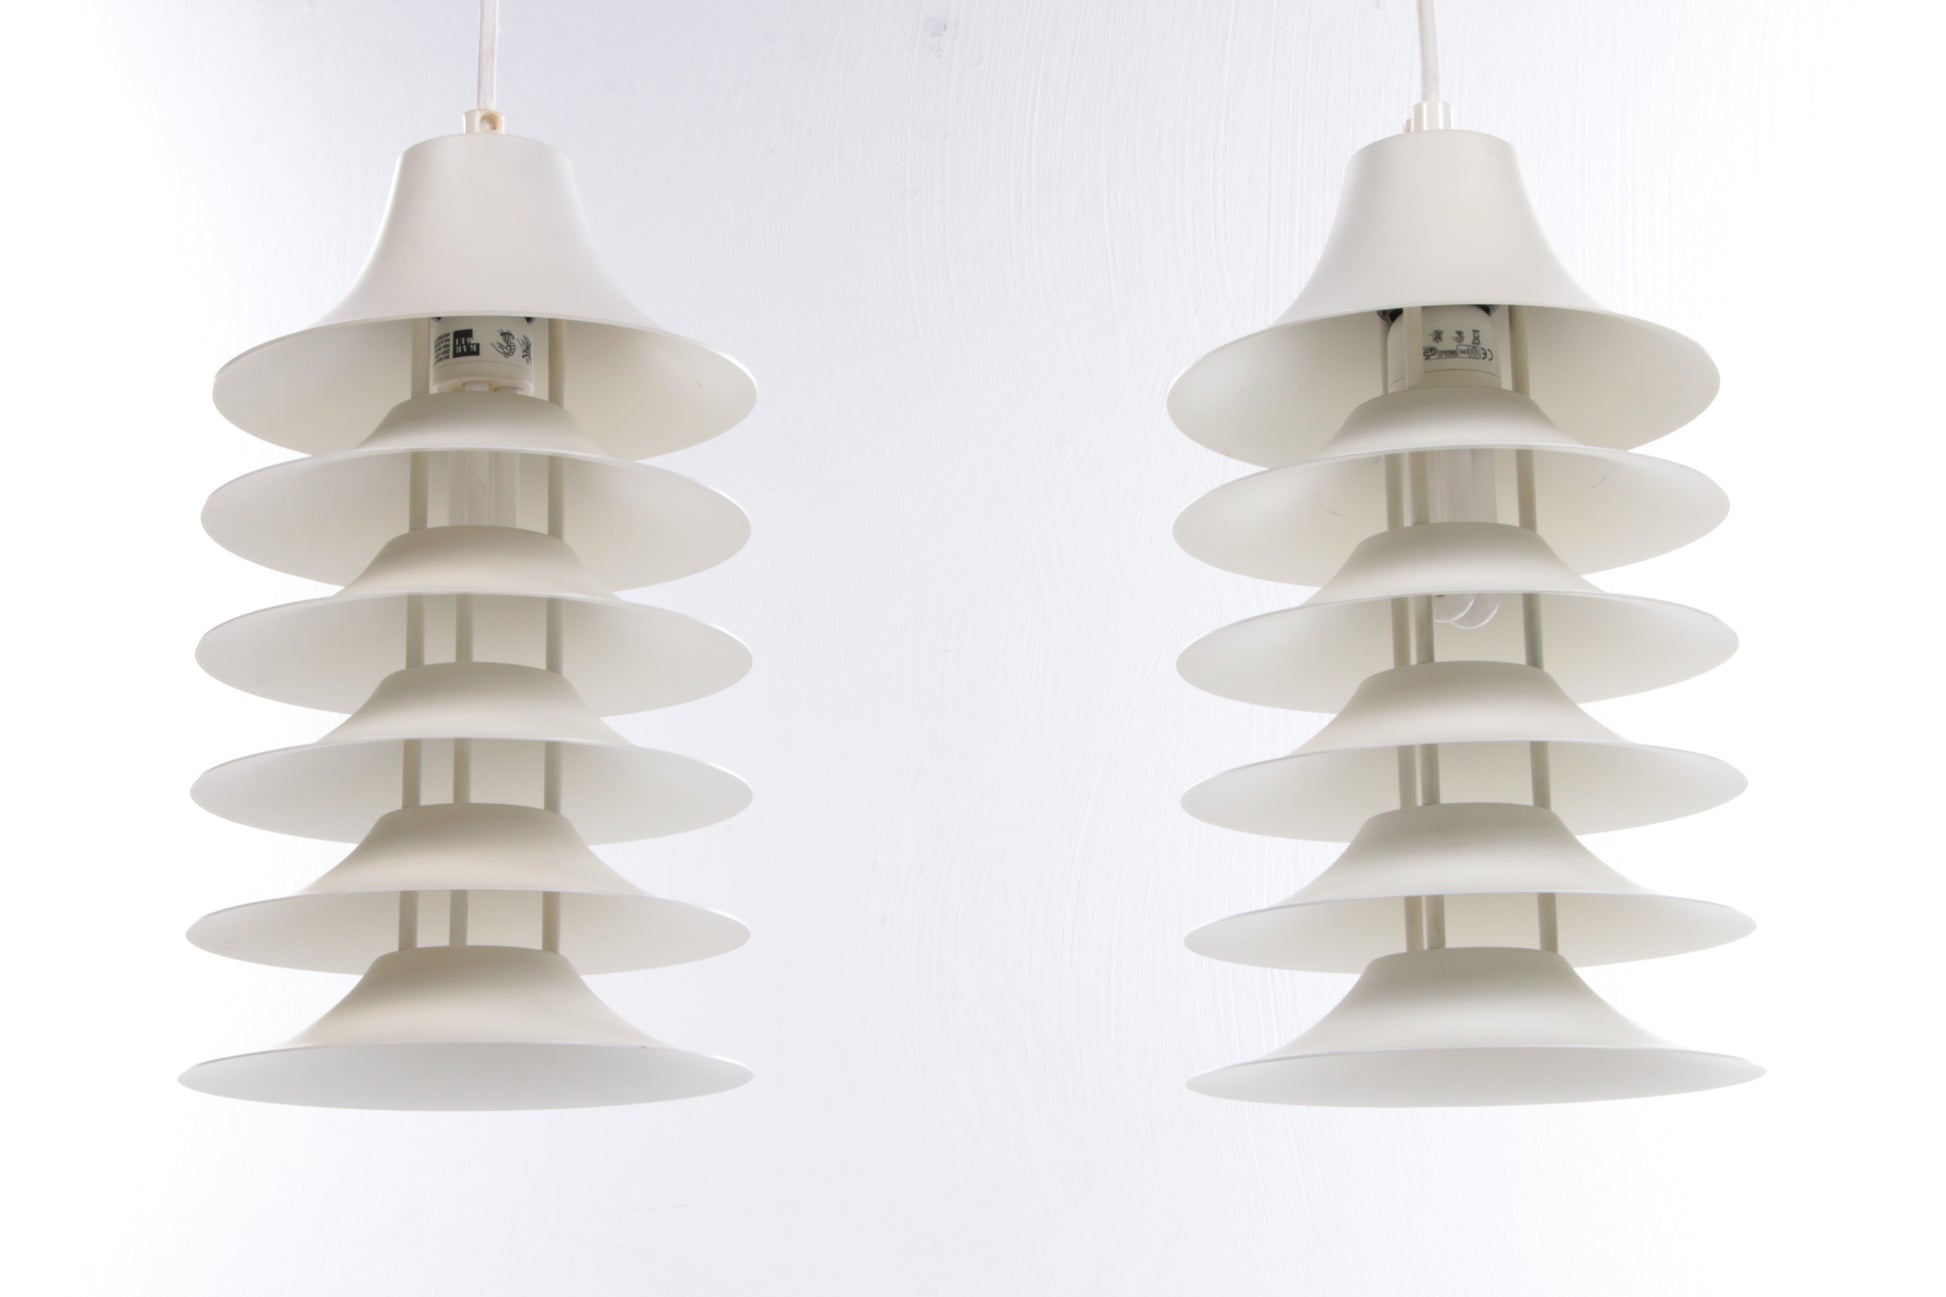 Vintage set van 2 Hanglampen ontwerp van Jorgen Gammelgaard,1970 denemarken.